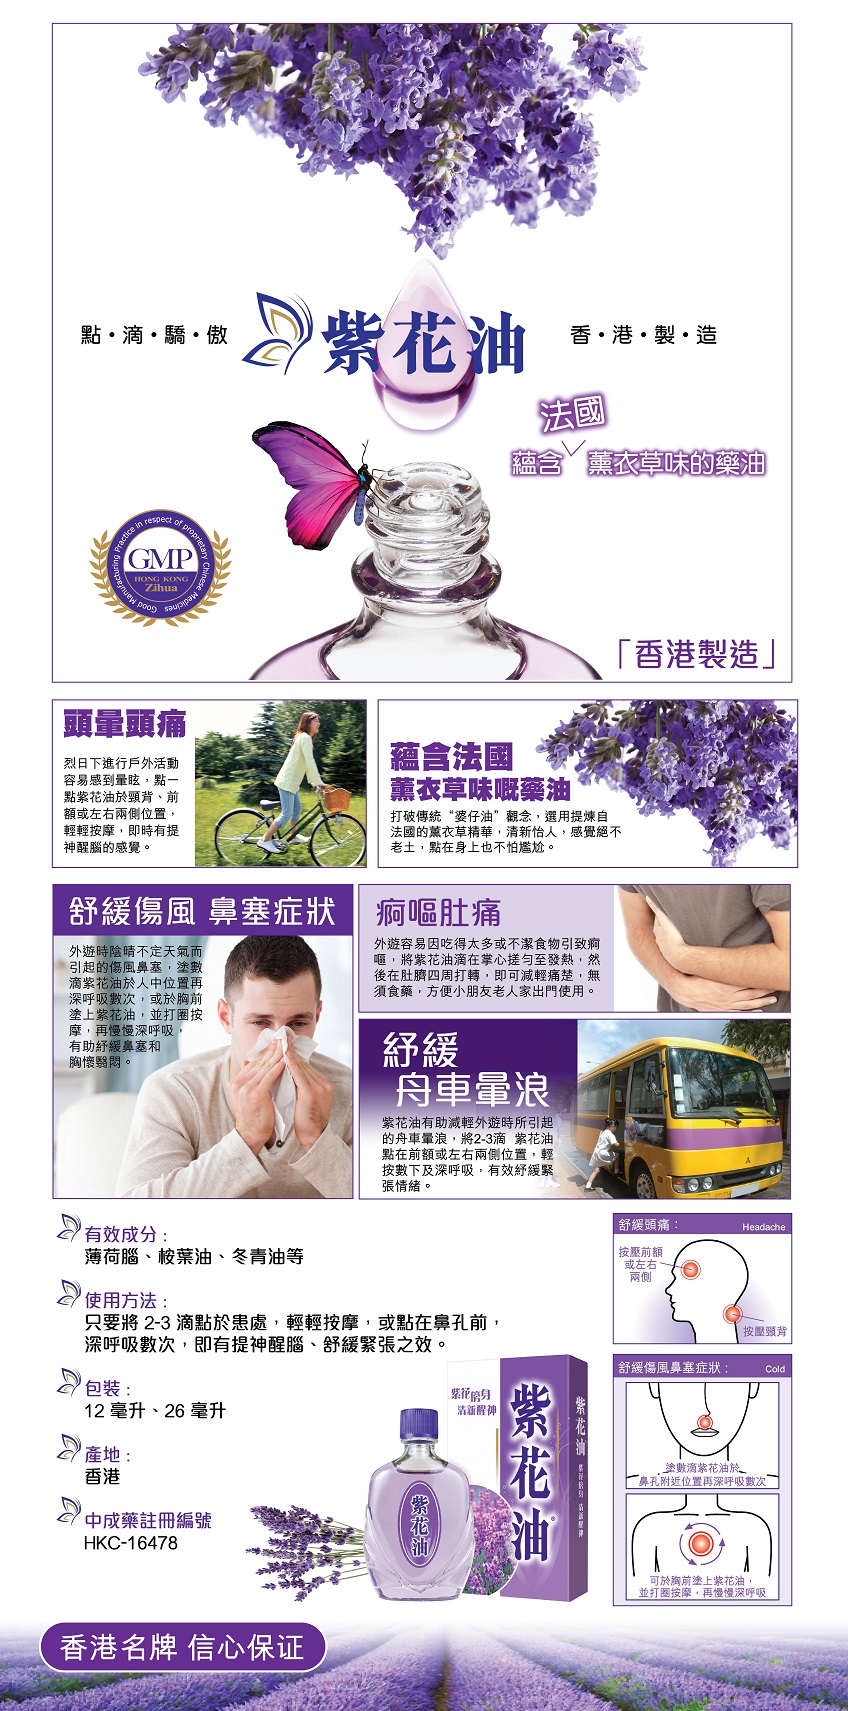 紫花油26毫升 香港蘇寧suning